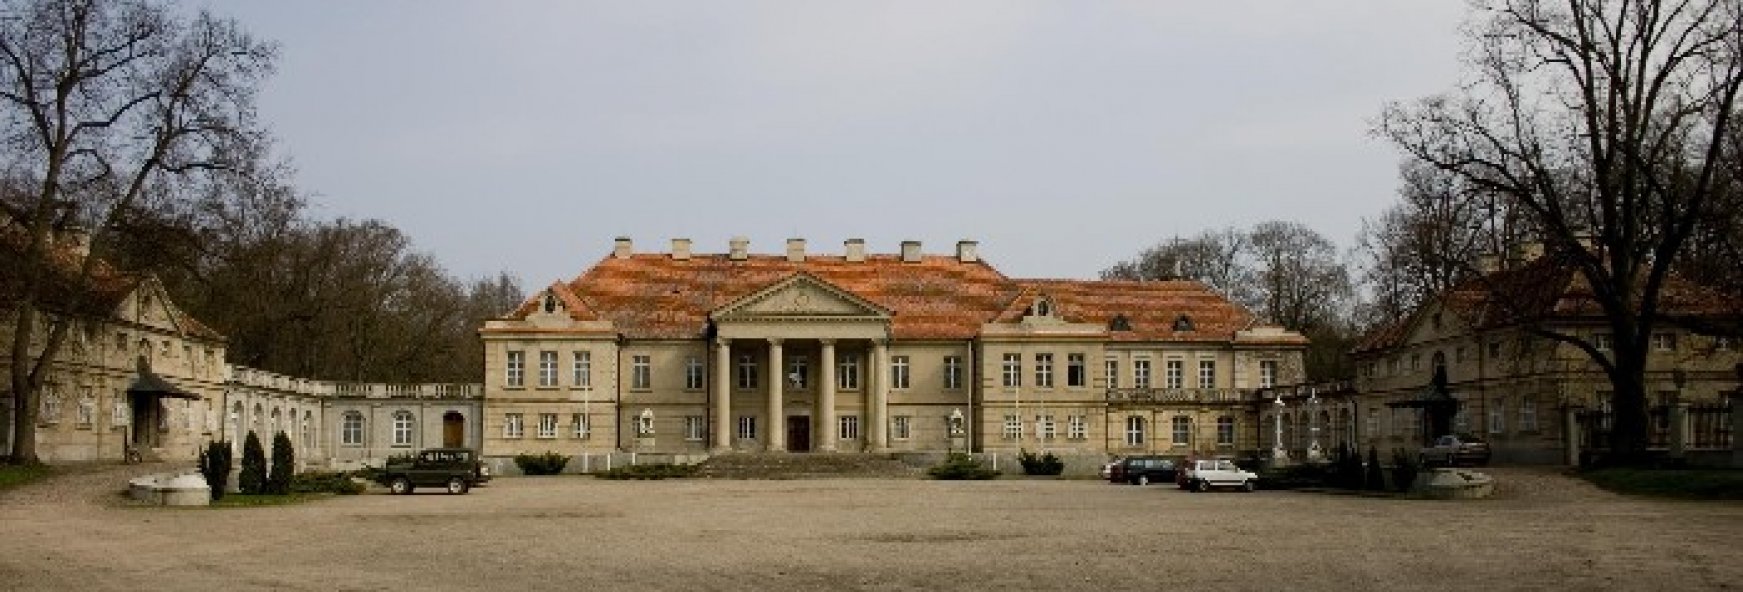 Pałac w Czerniejewie 